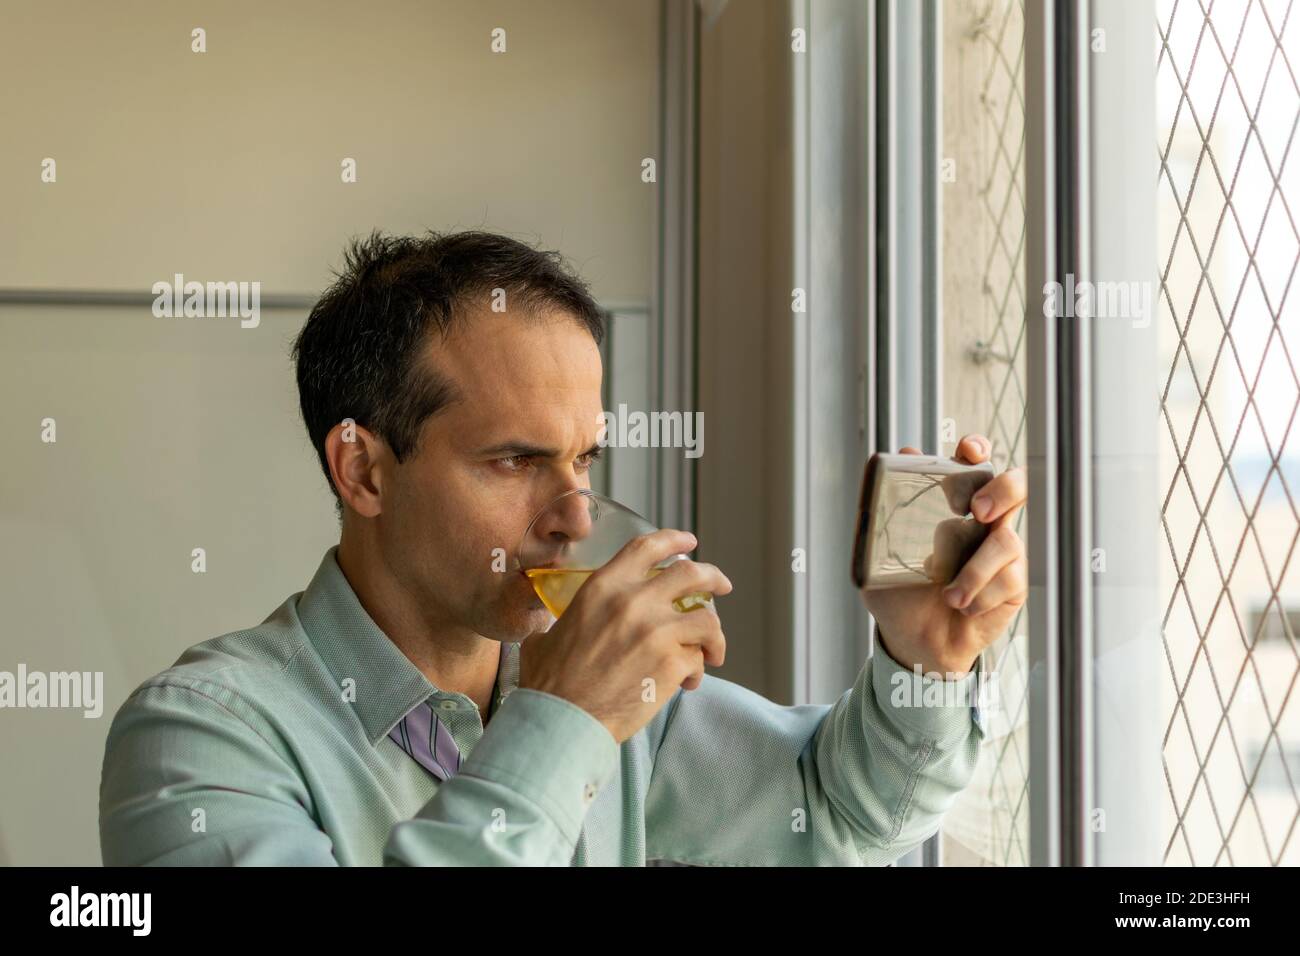 Hombre maduro (44 años) bebiendo whisky y viendo un vídeo en su smartphone. Foto de stock